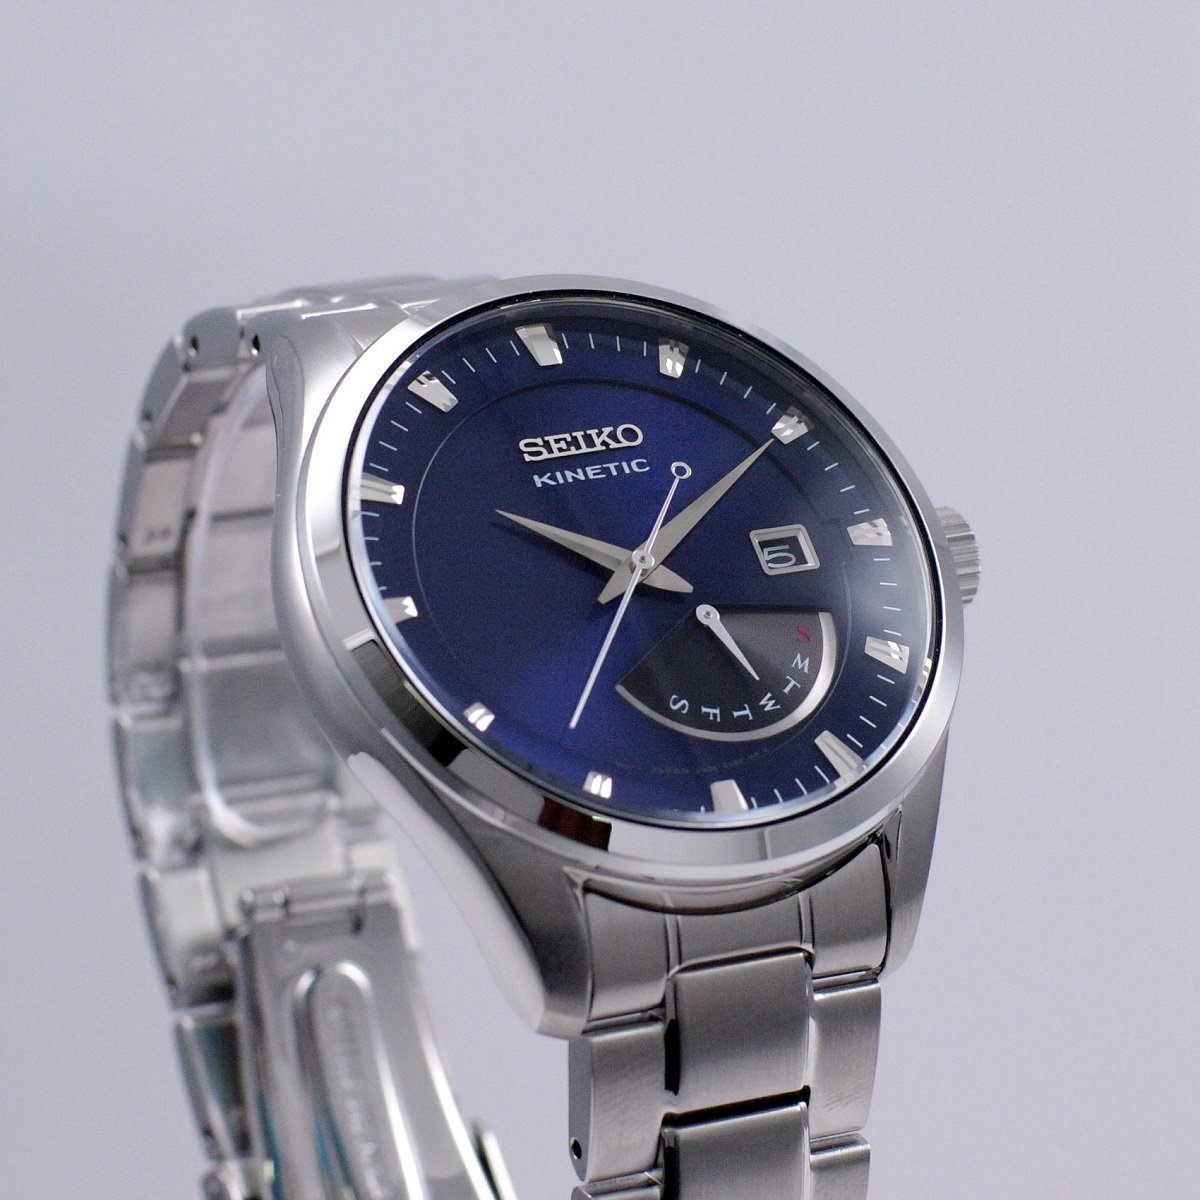 【楽天市場】セイコー SEIKO 腕時計 海外モデル KINETIC キネティック レトログラード ネイビー SRN047P1 メンズ [逆輸入品]：アッキーインターナショナル